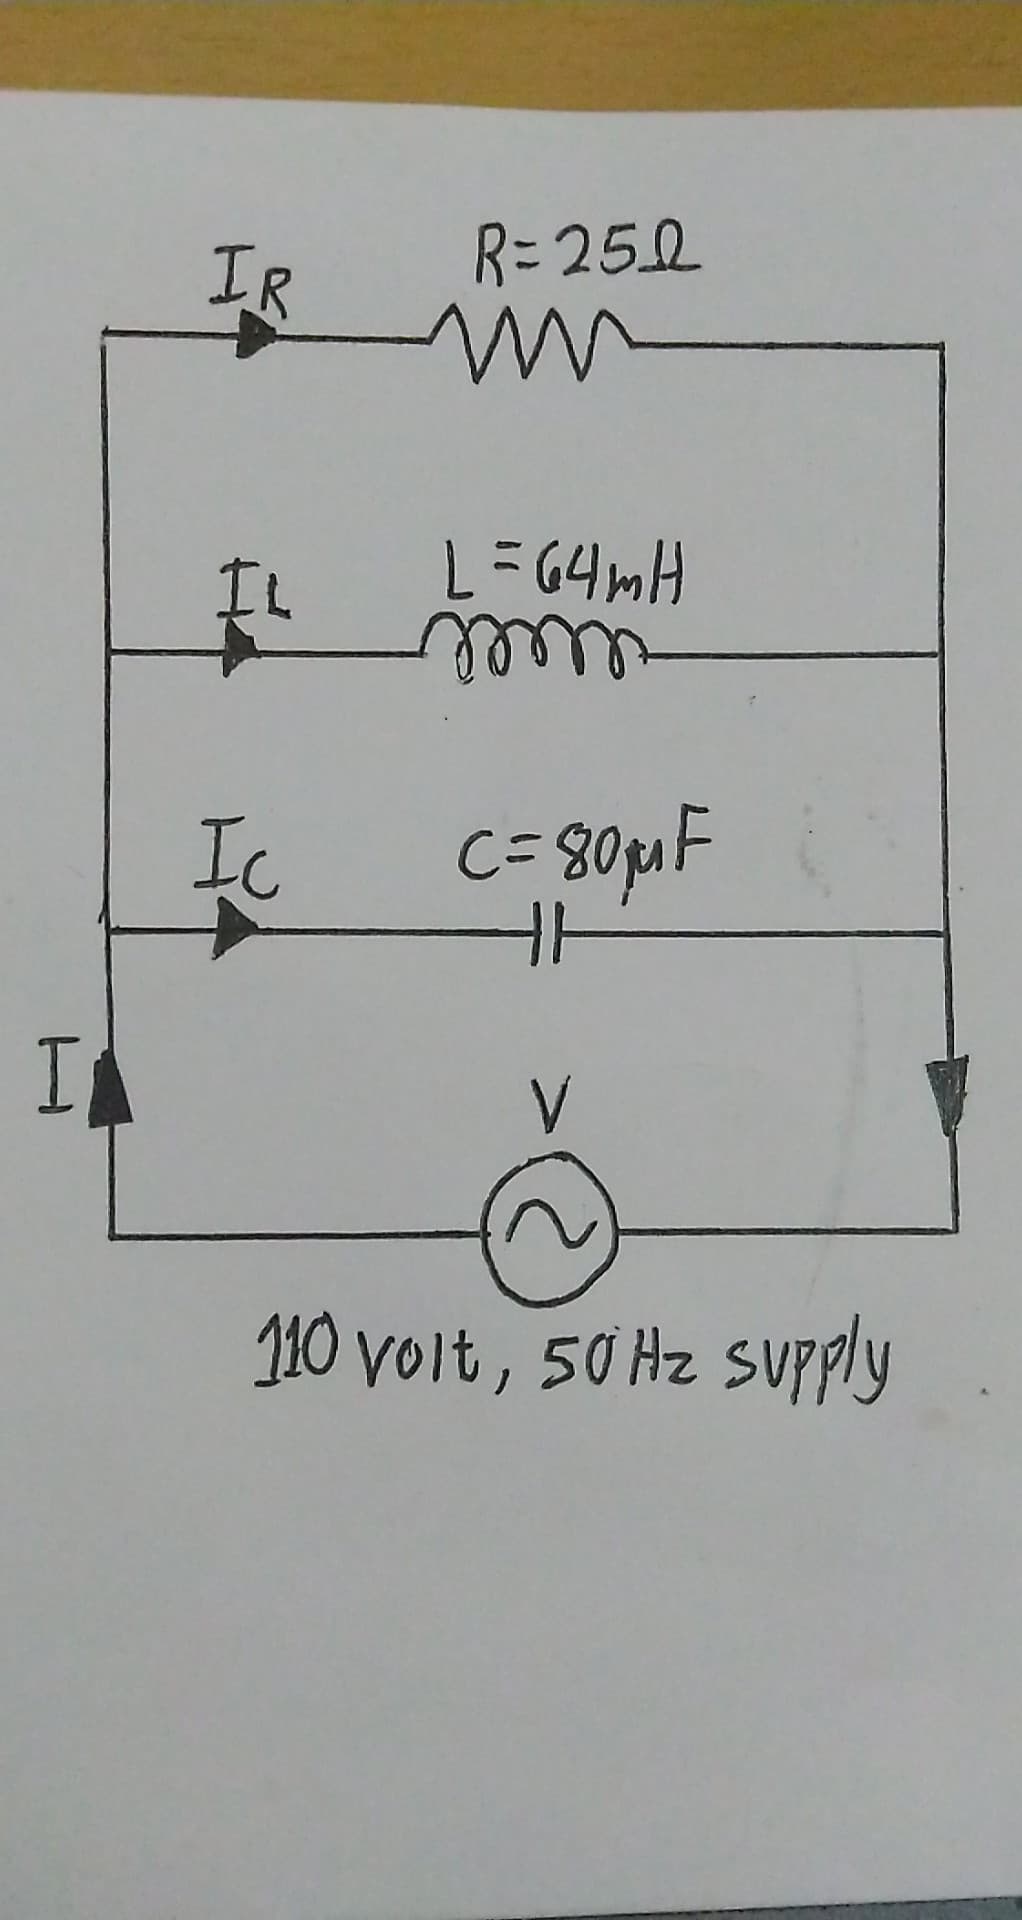 IR
R=252
IL
HM6ワニ7
Ic
C= 80pF
110 volt, 50 Hz Supply
